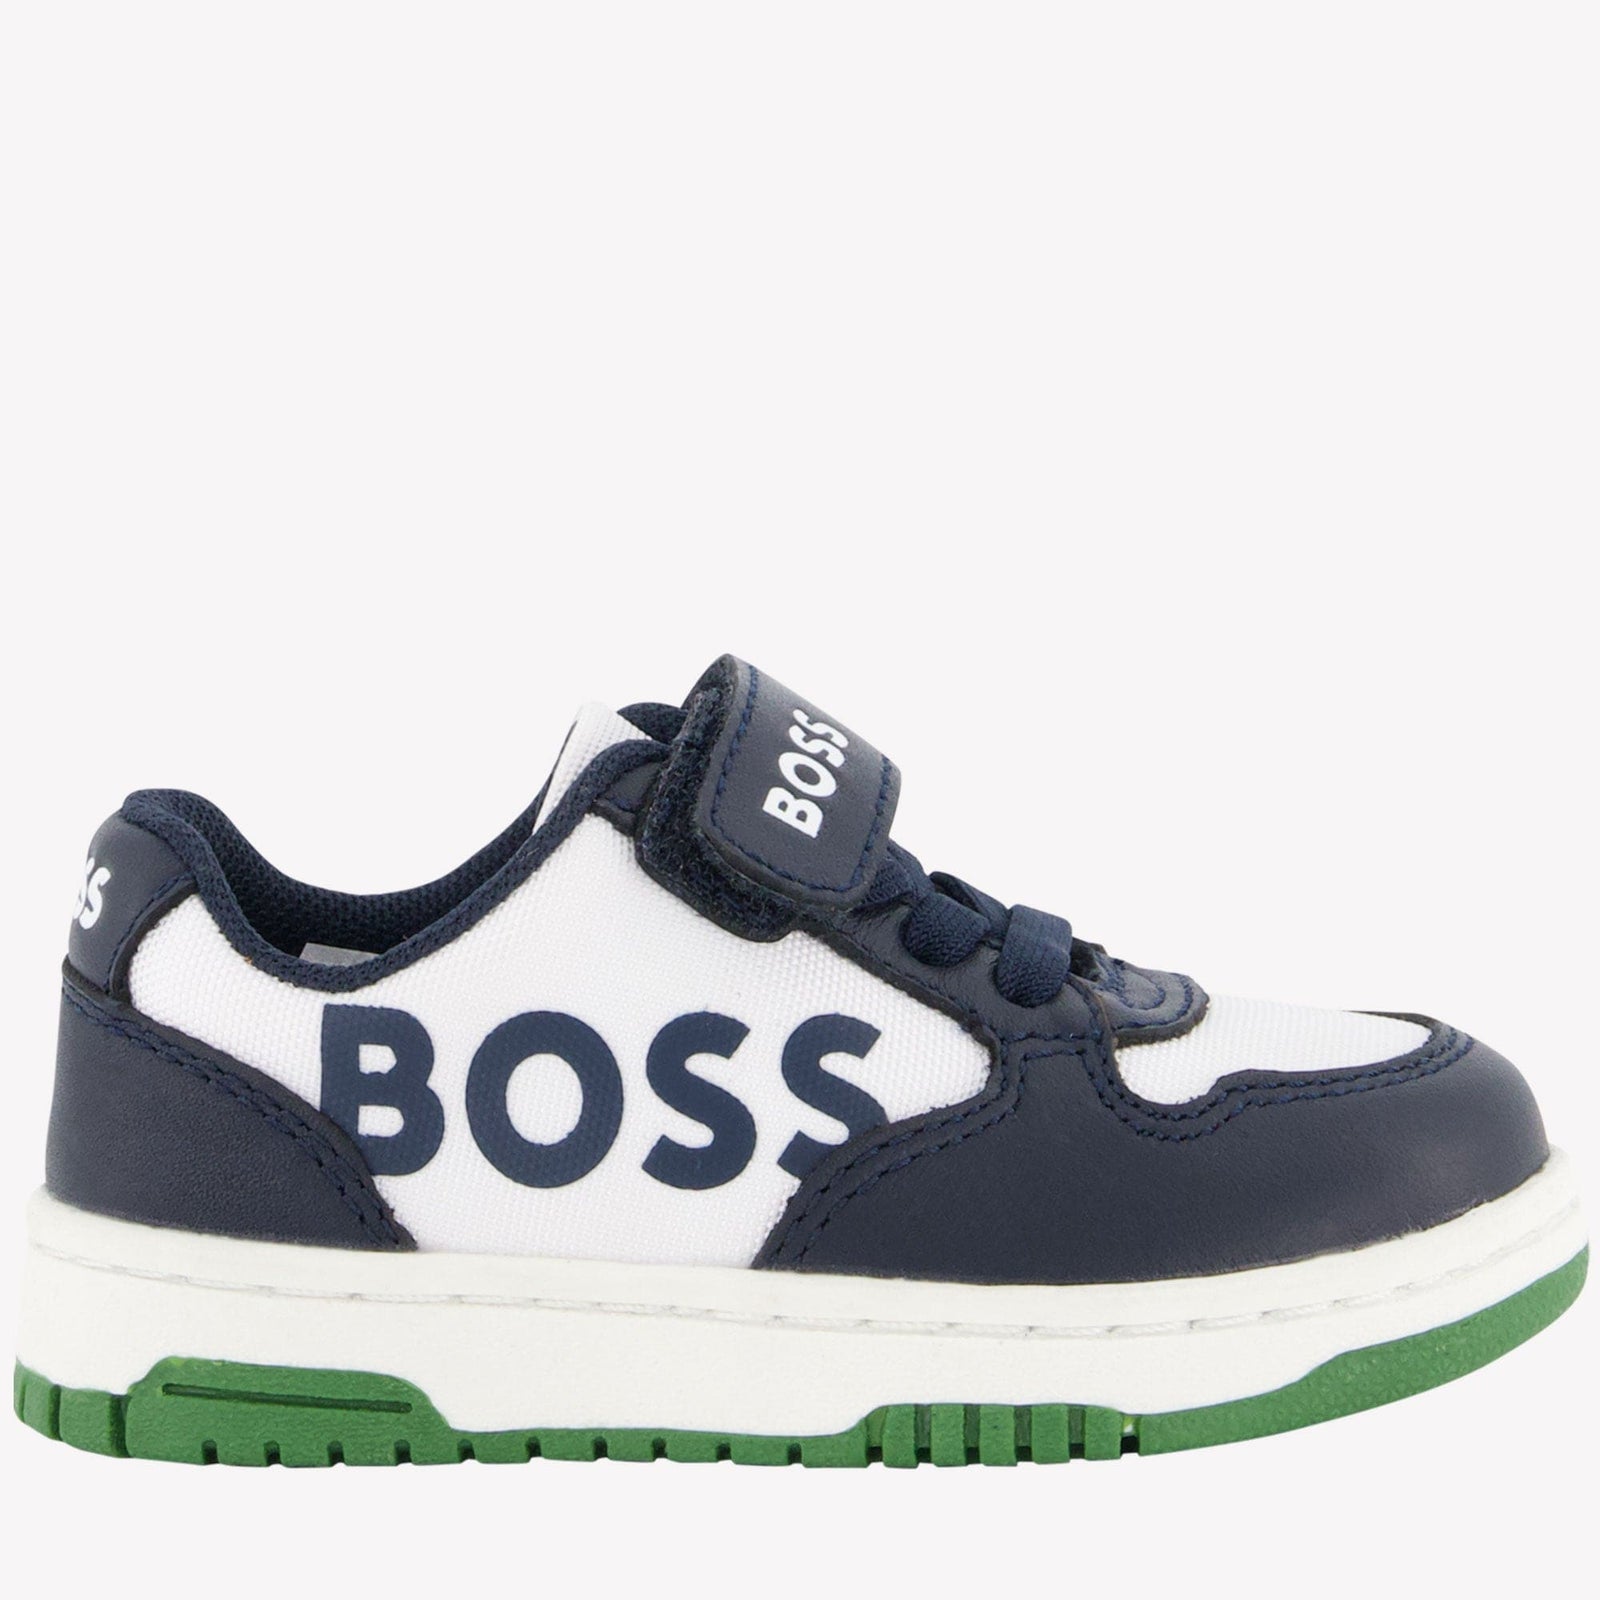 Boss Kinder Jongens Sneakers Zwart 20